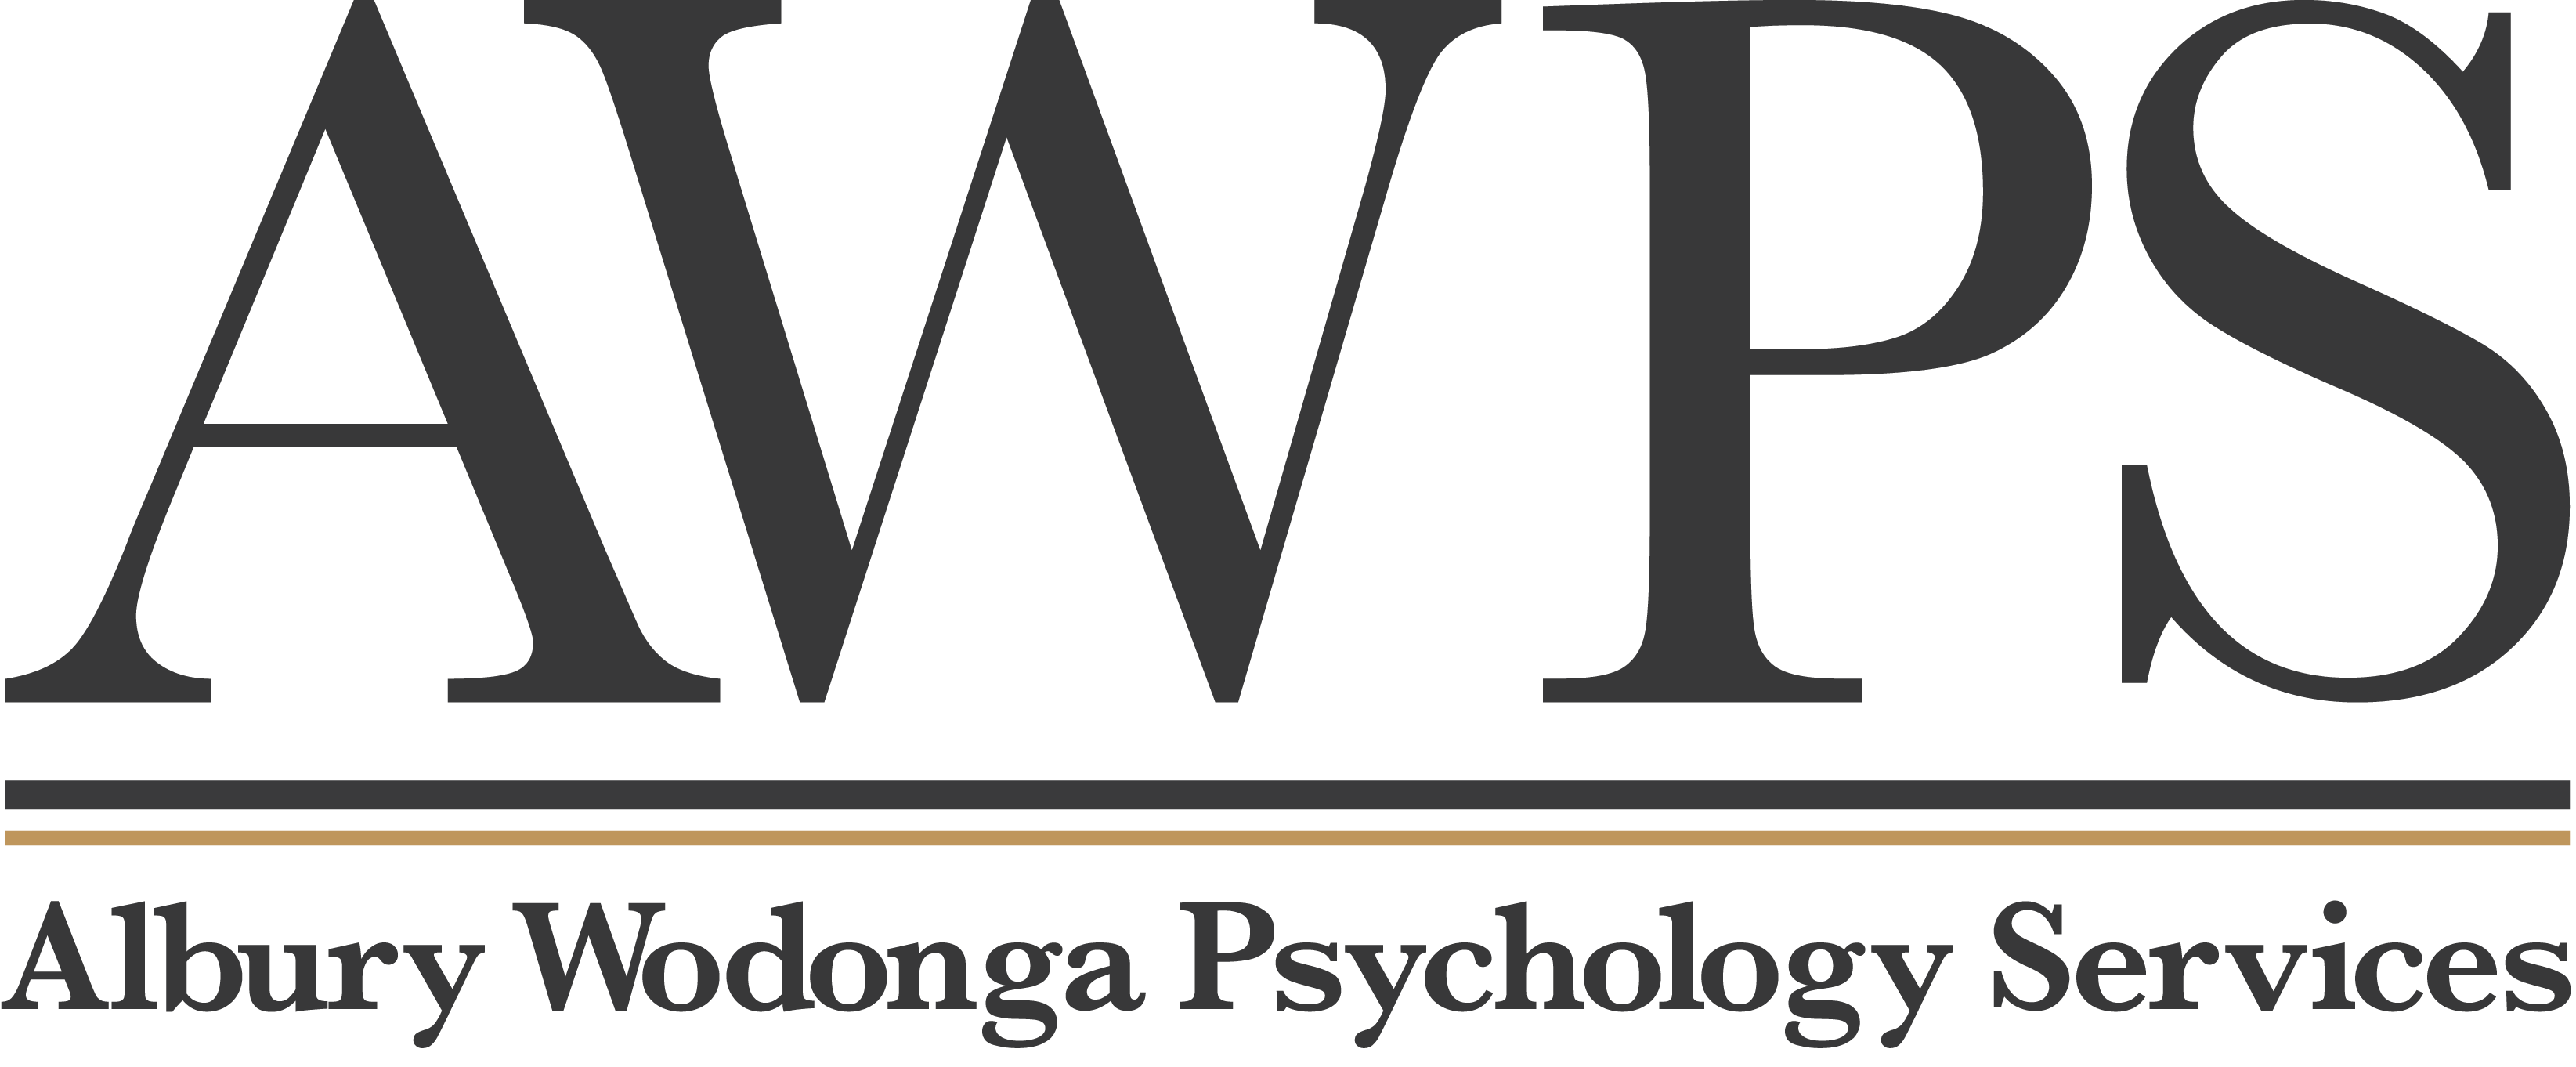 Albury Wodonga Psychology Services